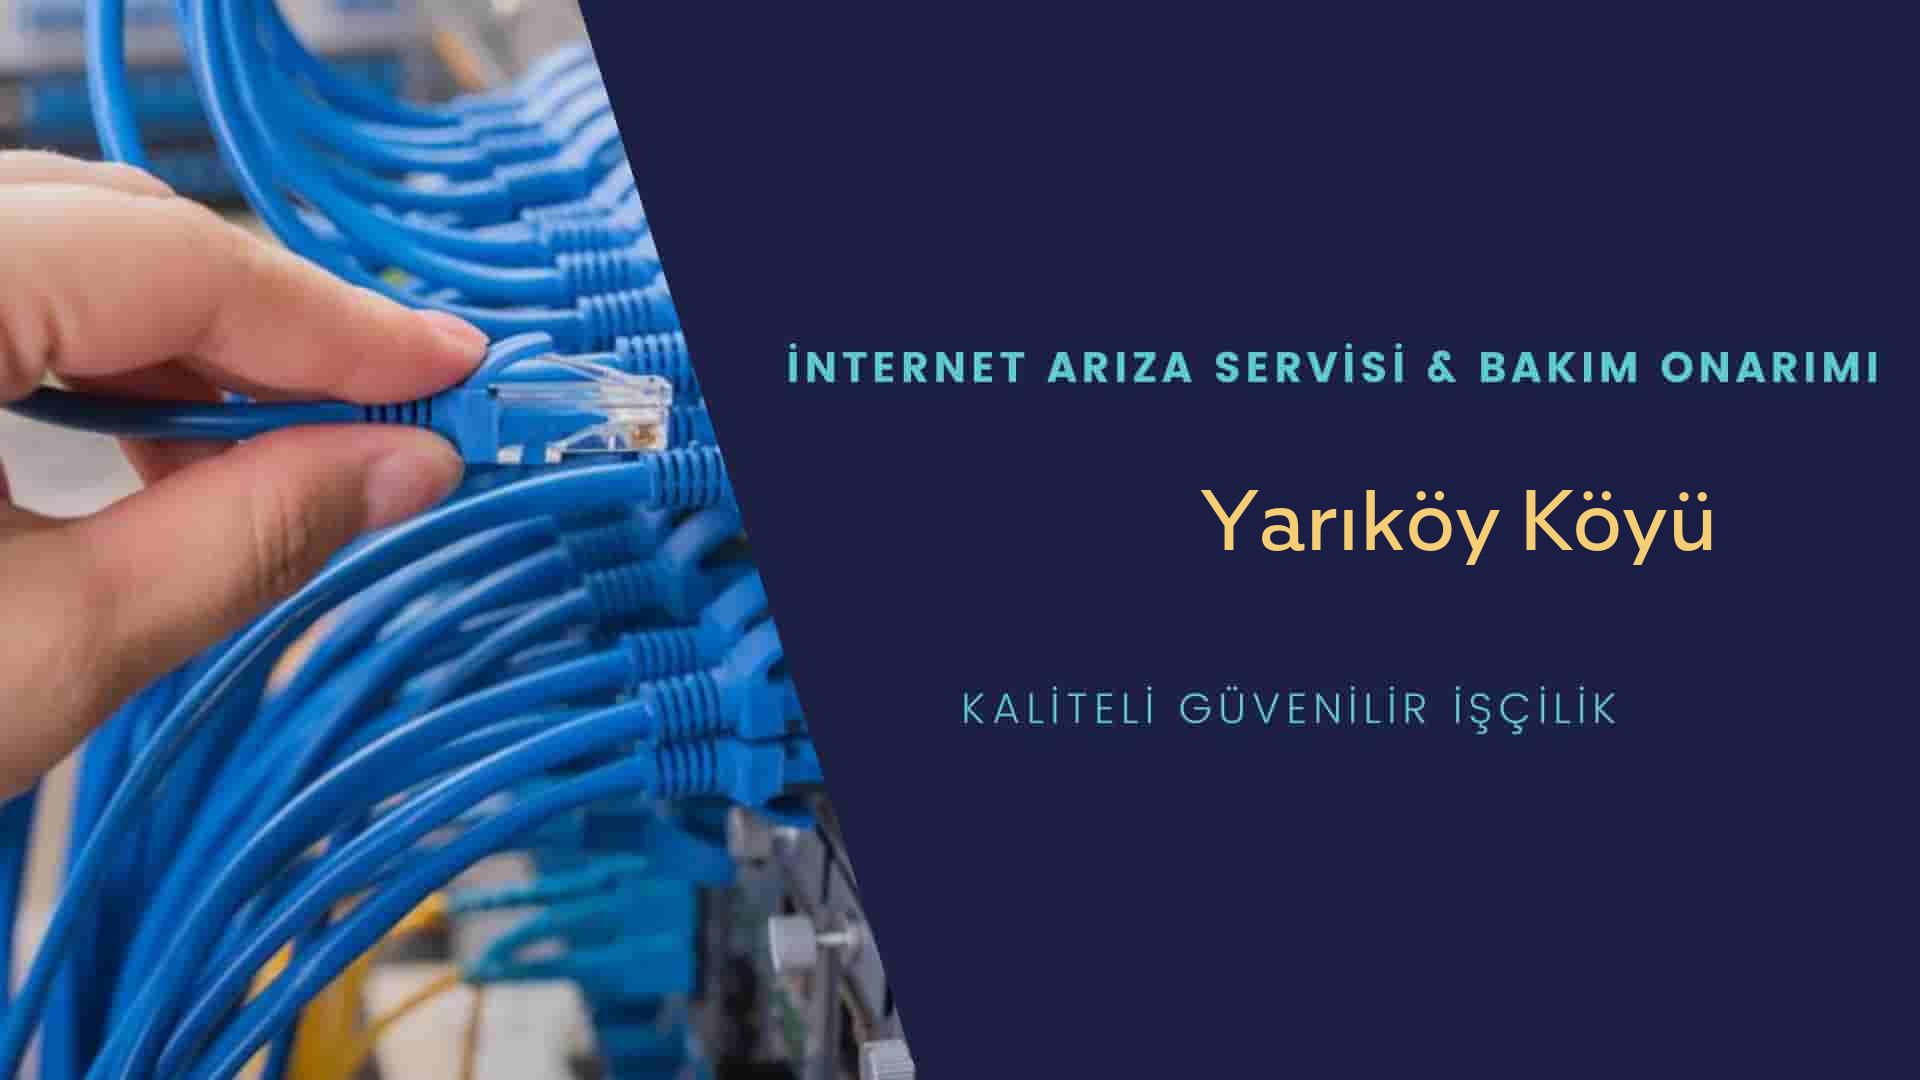 Yarıköy Köyü internet kablosu çekimi yapan yerler veya elektrikçiler mi? arıyorsunuz doğru yerdesiniz o zaman sizlere 7/24 yardımcı olacak profesyonel ustalarımız bir telefon kadar yakındır size.